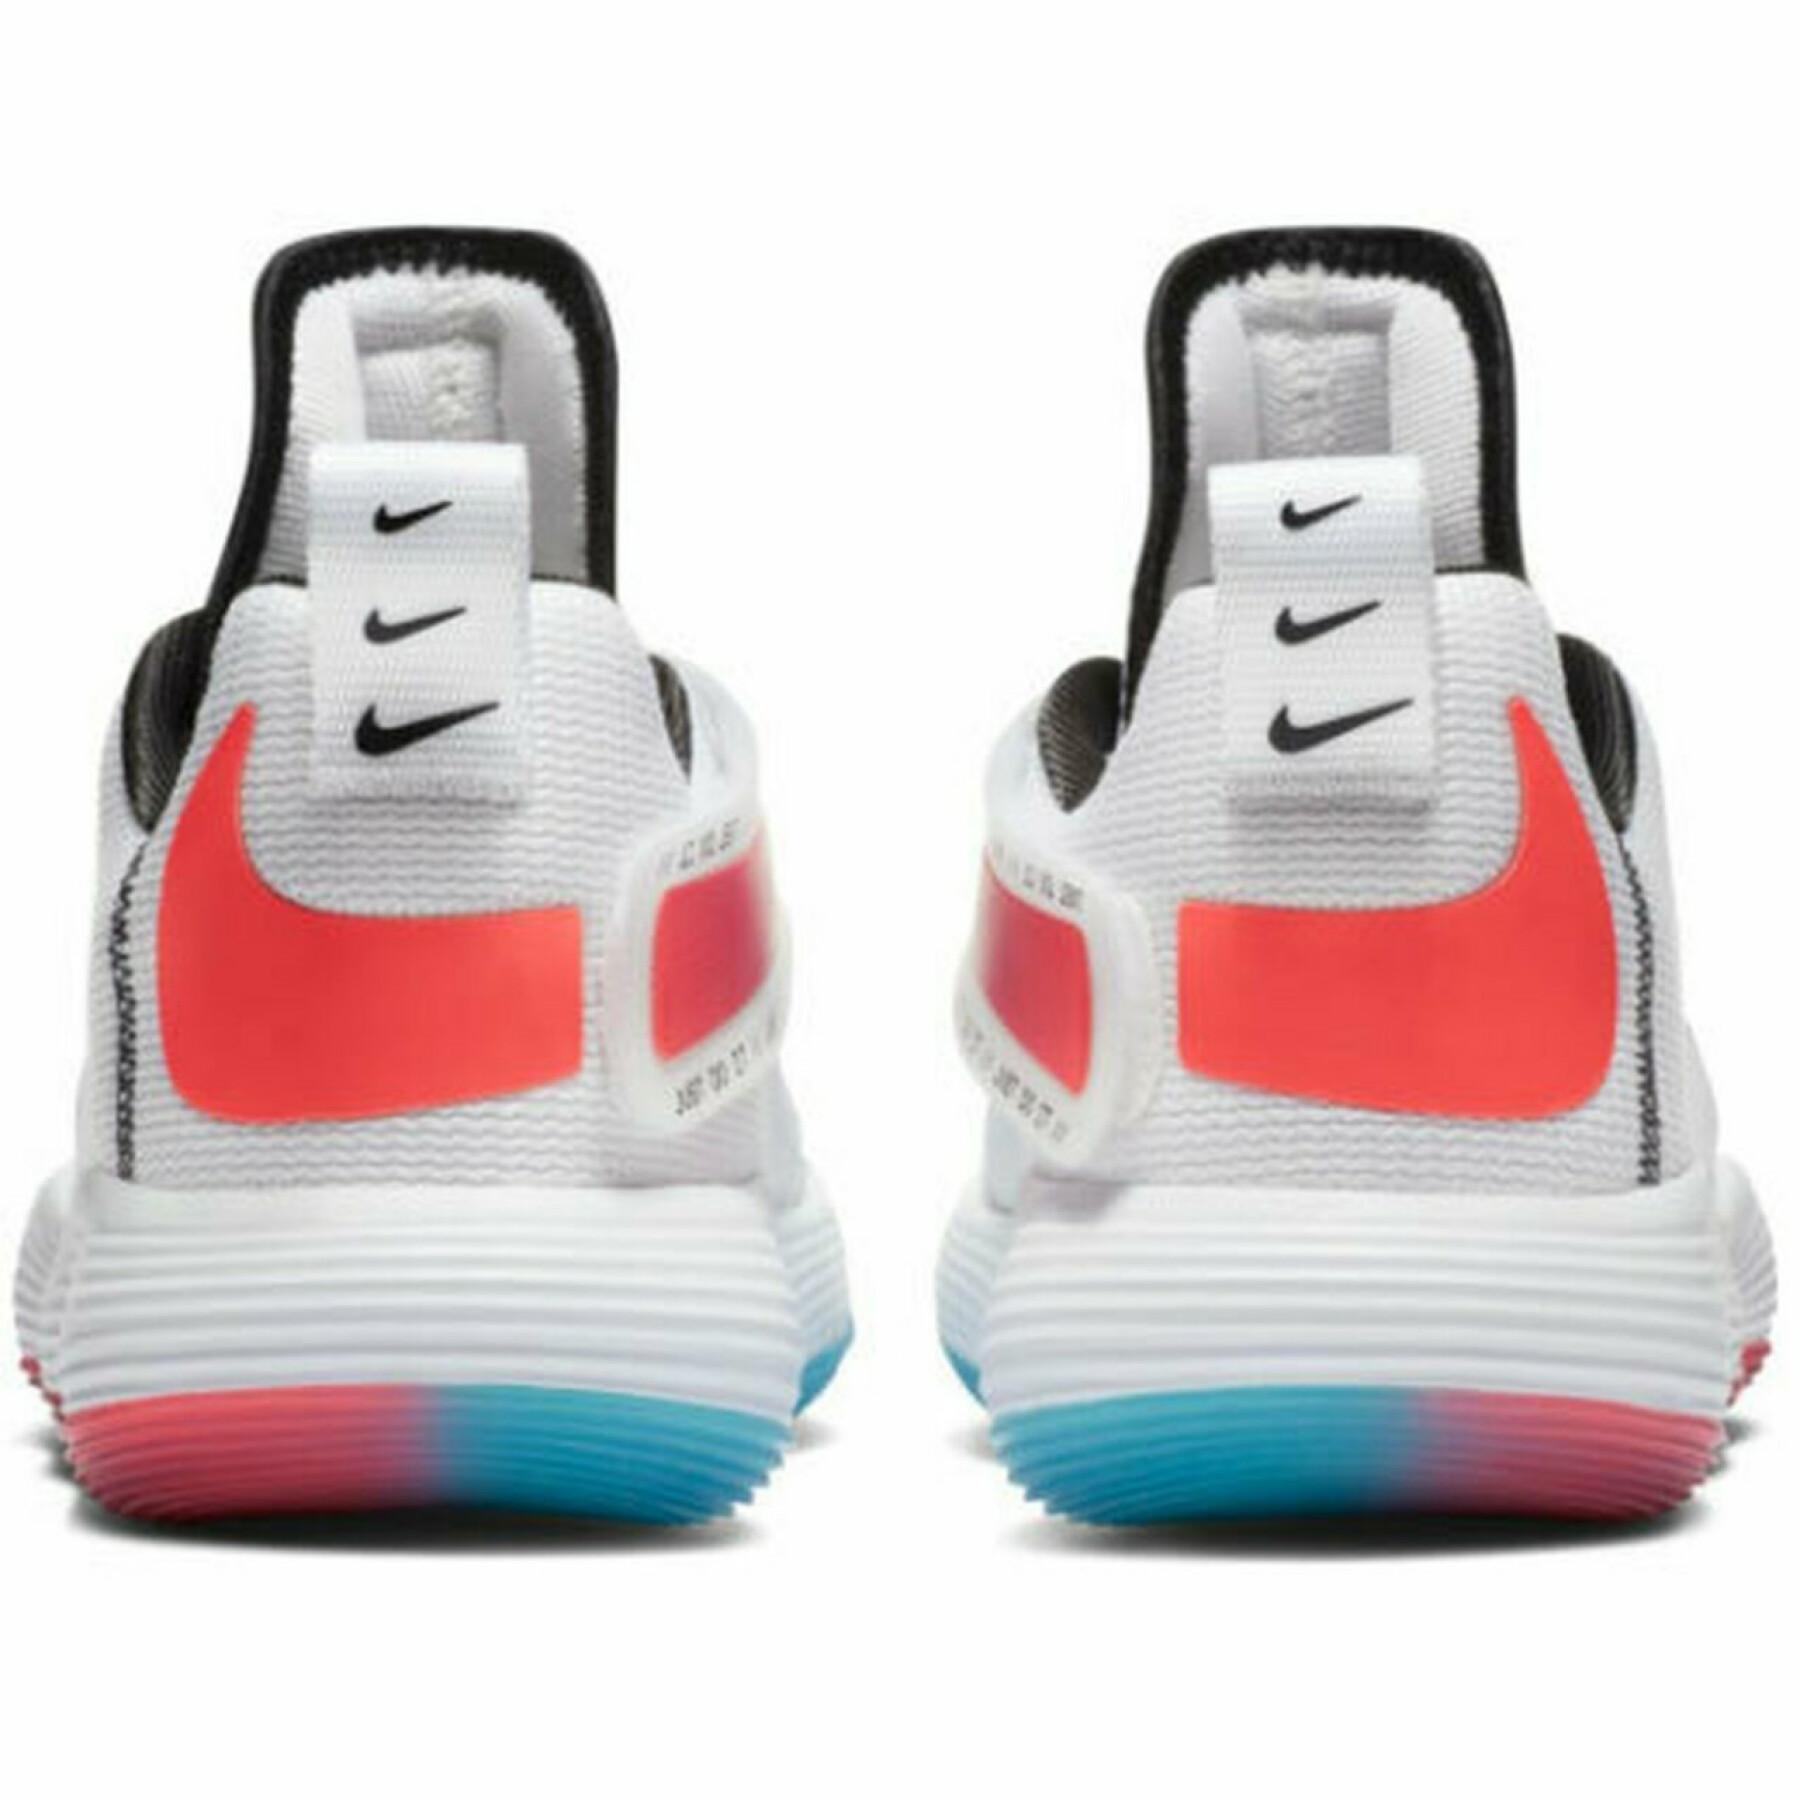 Schoenen Nike Zoom Hyperspeed Court 